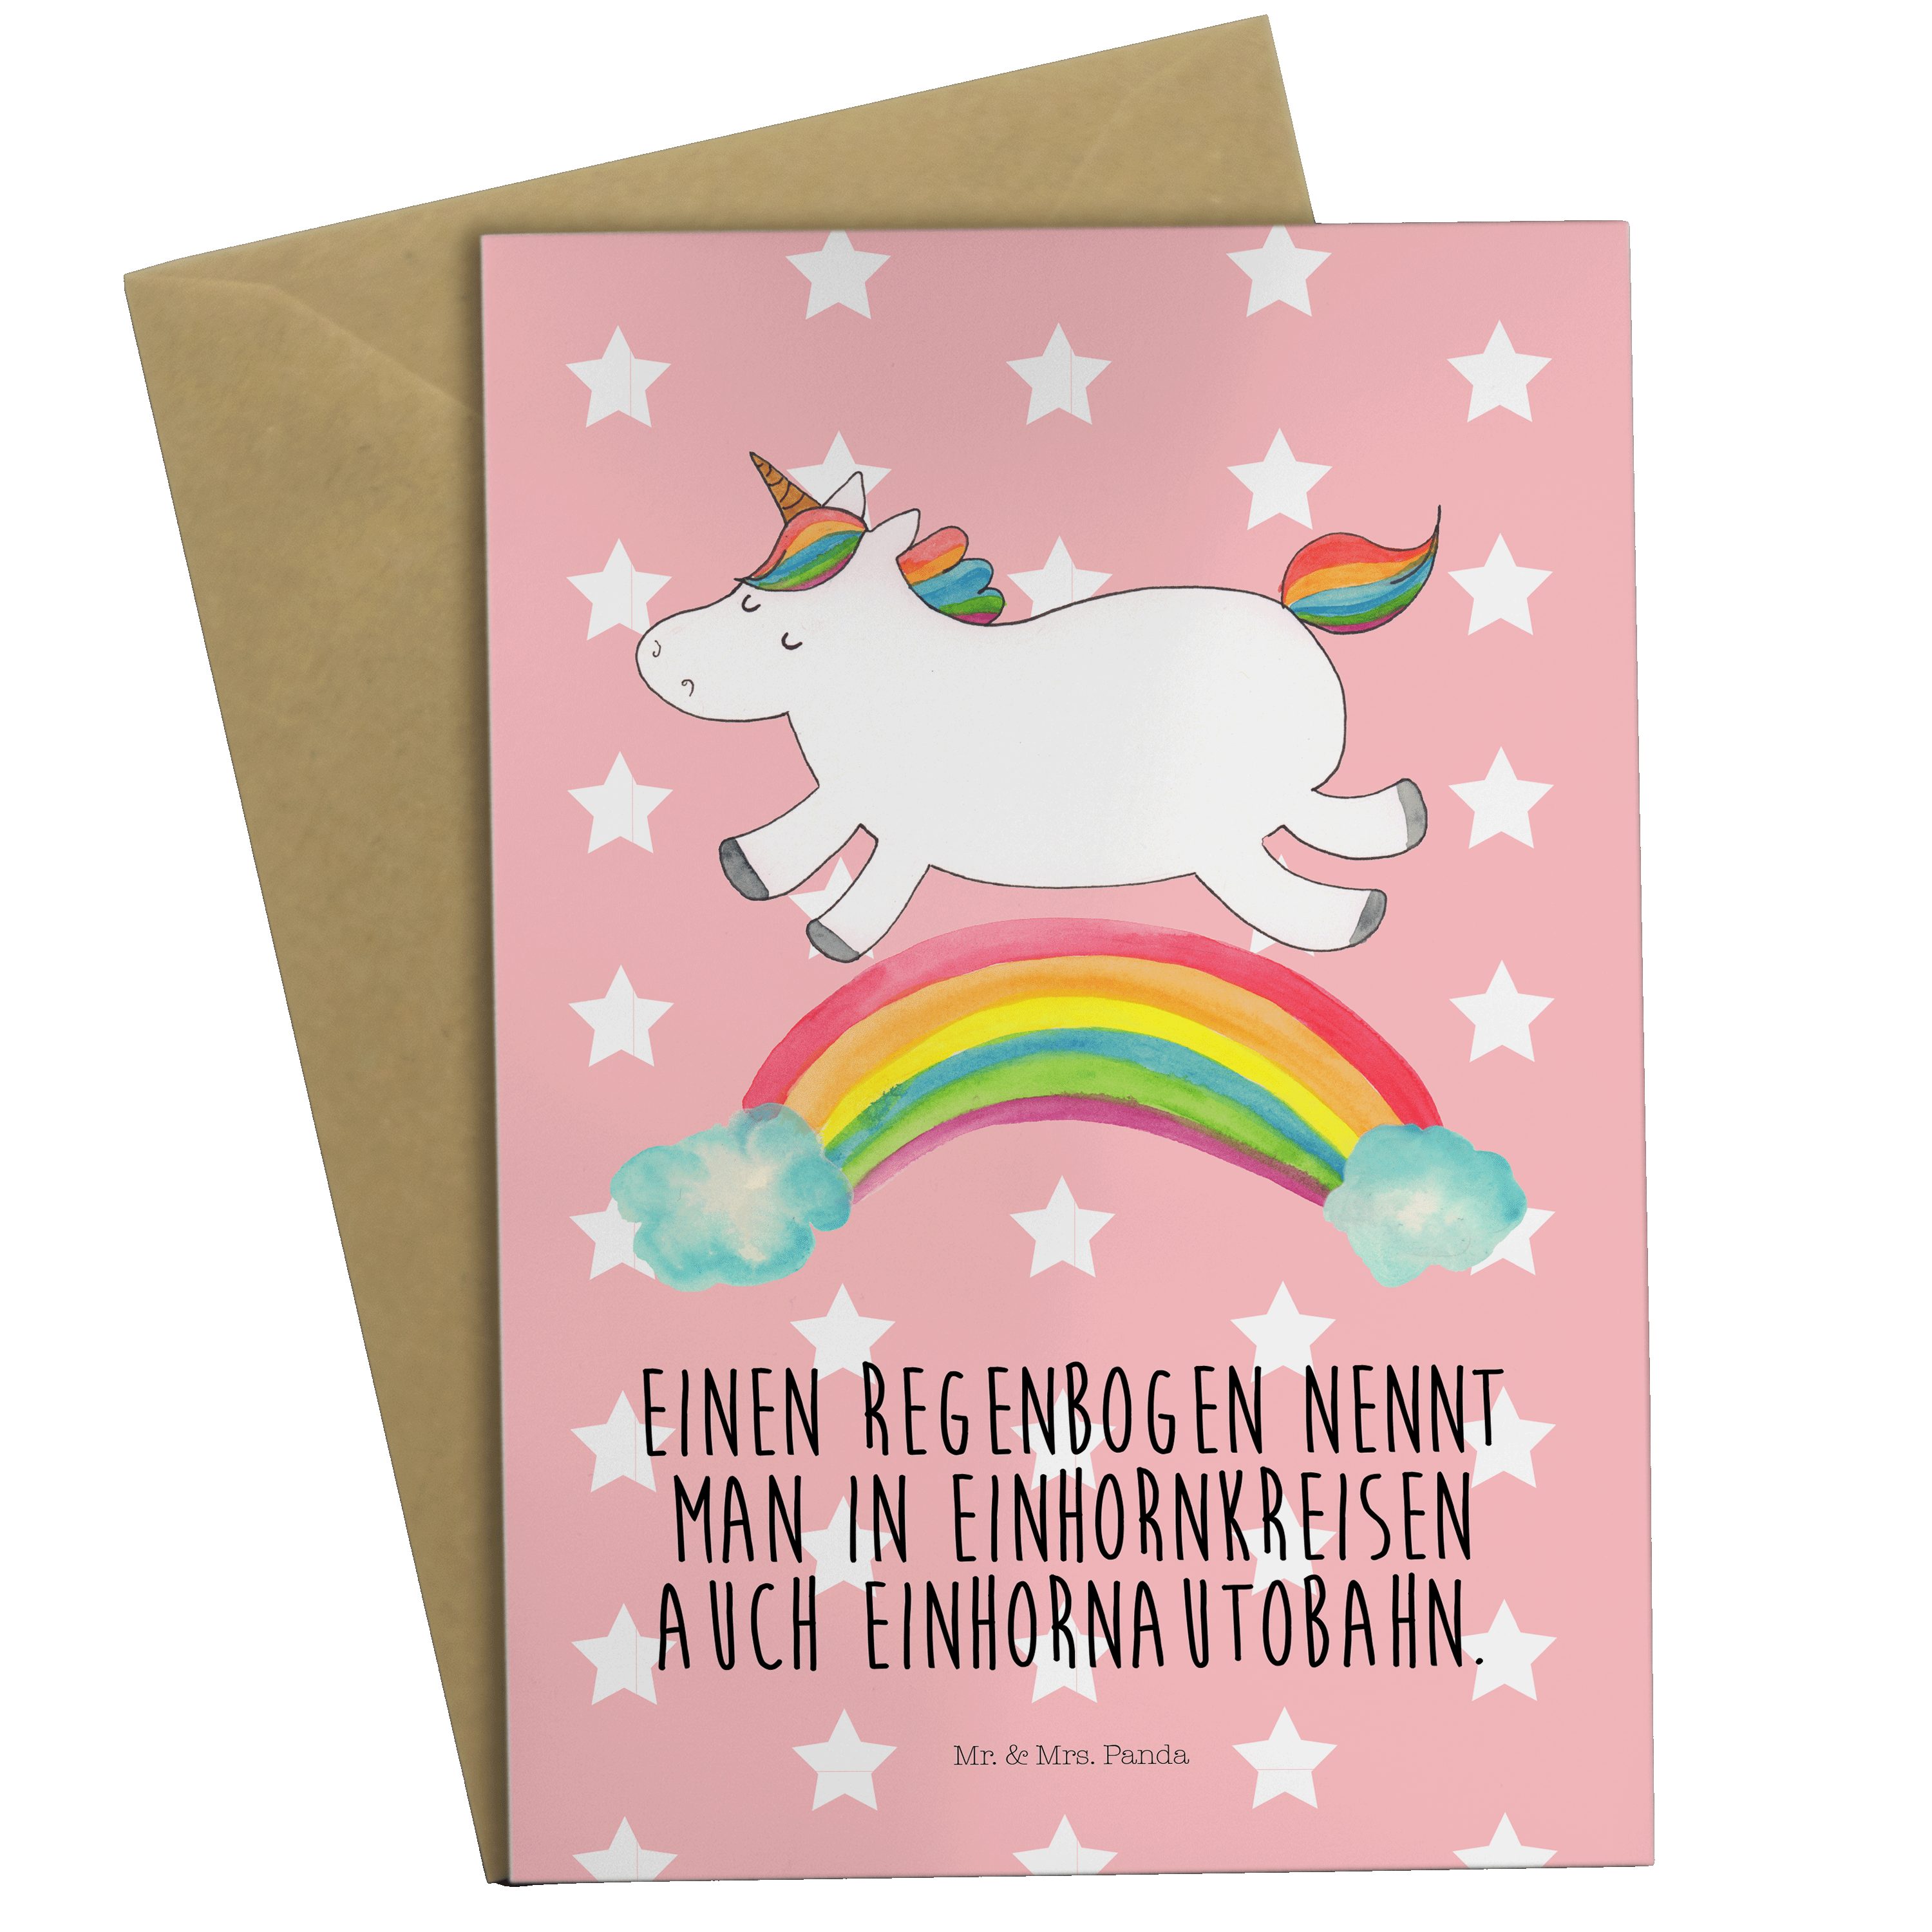 Mr. & Mrs. Panda Grußkarte Einhorn Regenbogen - Rot Pastell - Geschenk, Hochzeitskarte, Klappkar